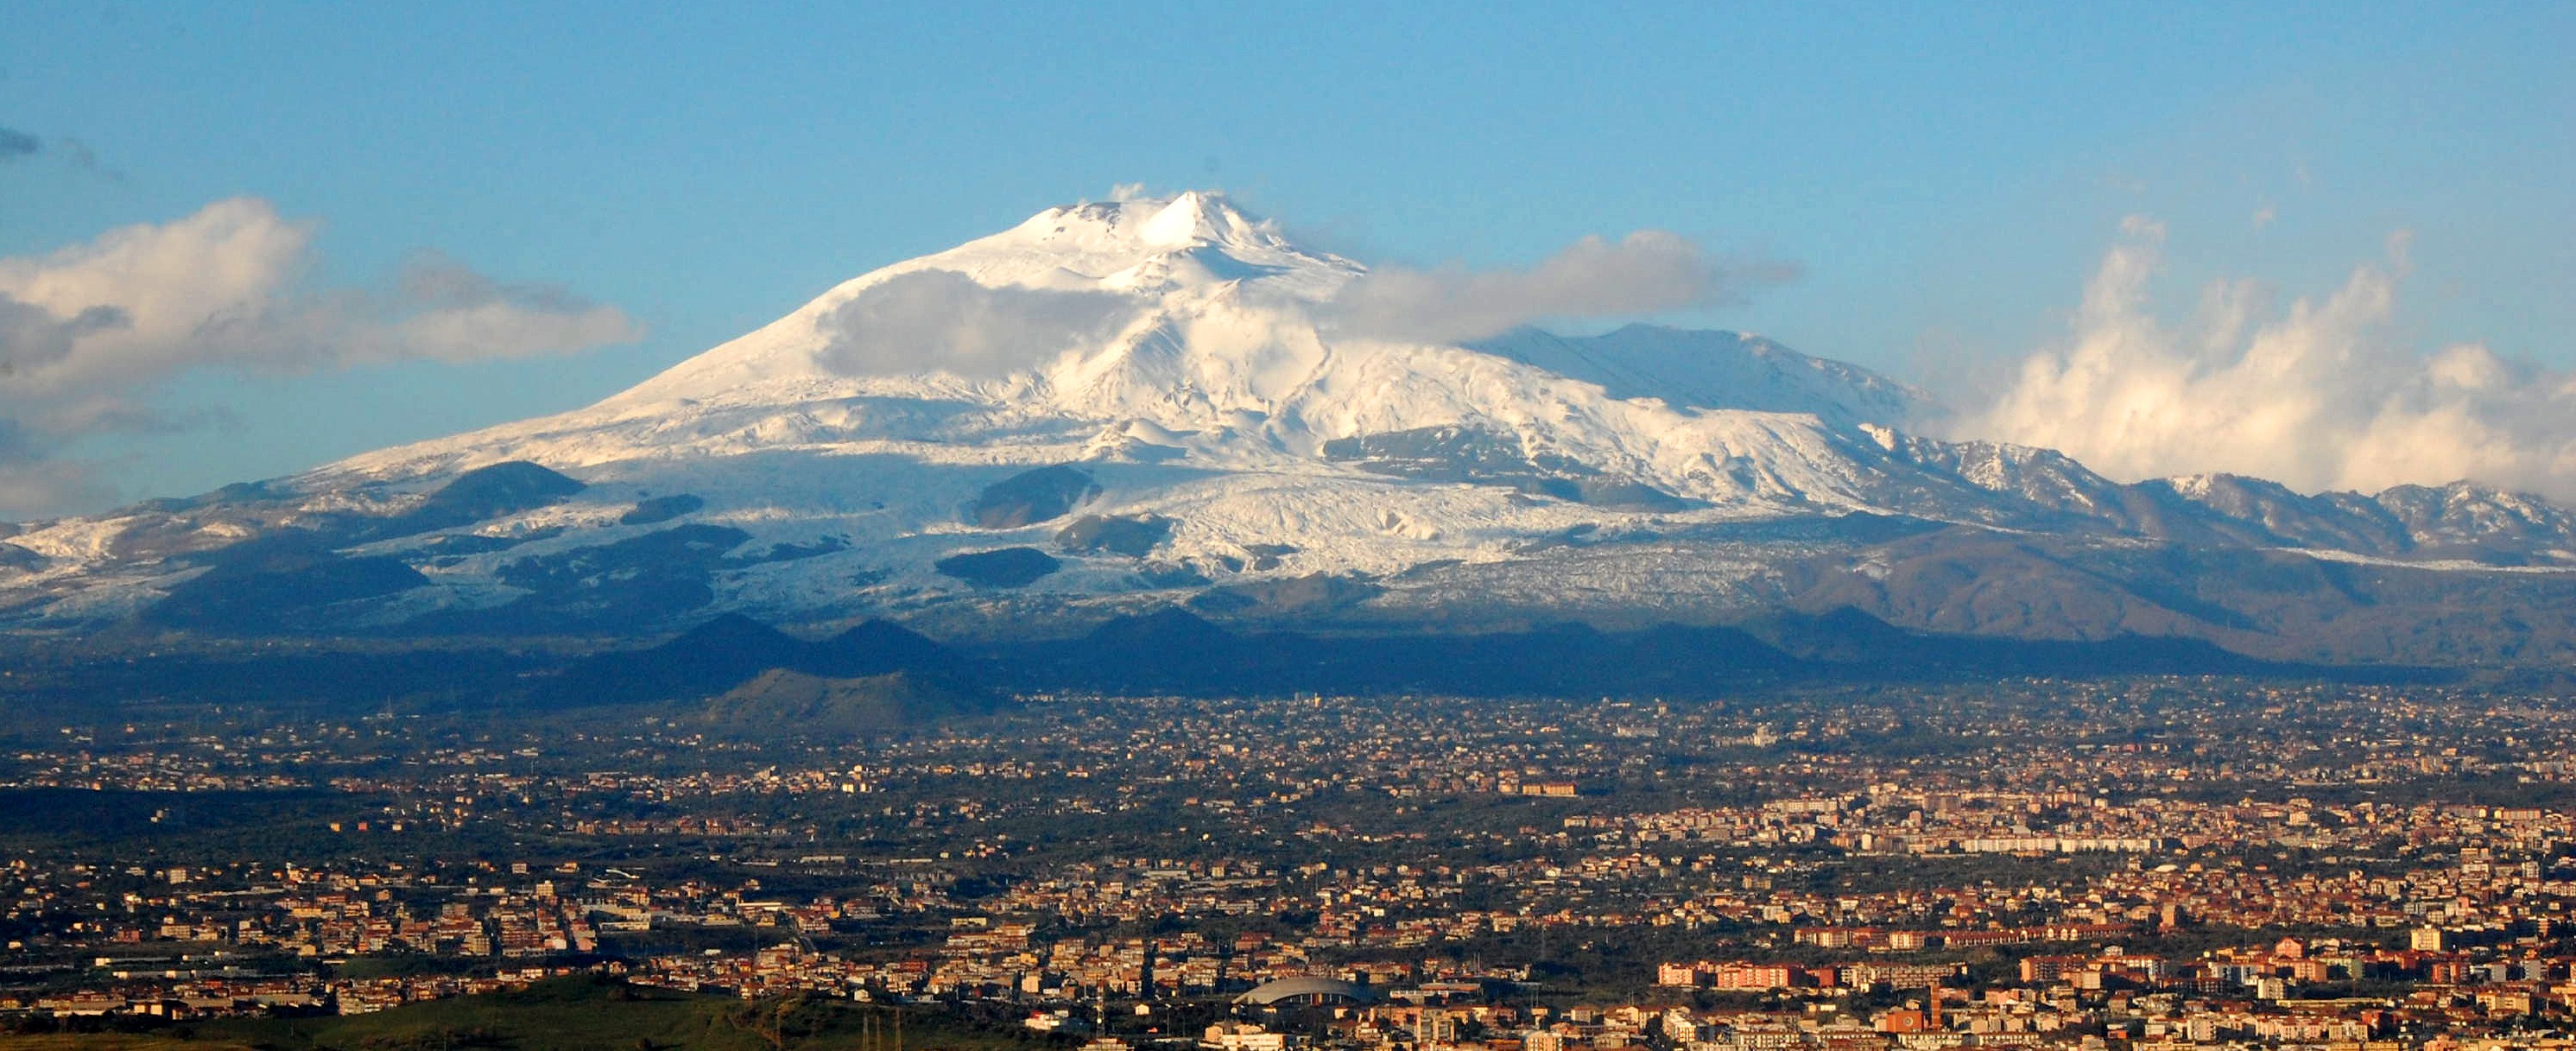 کوه اتنا - مکان های دیدنی ایتالیا